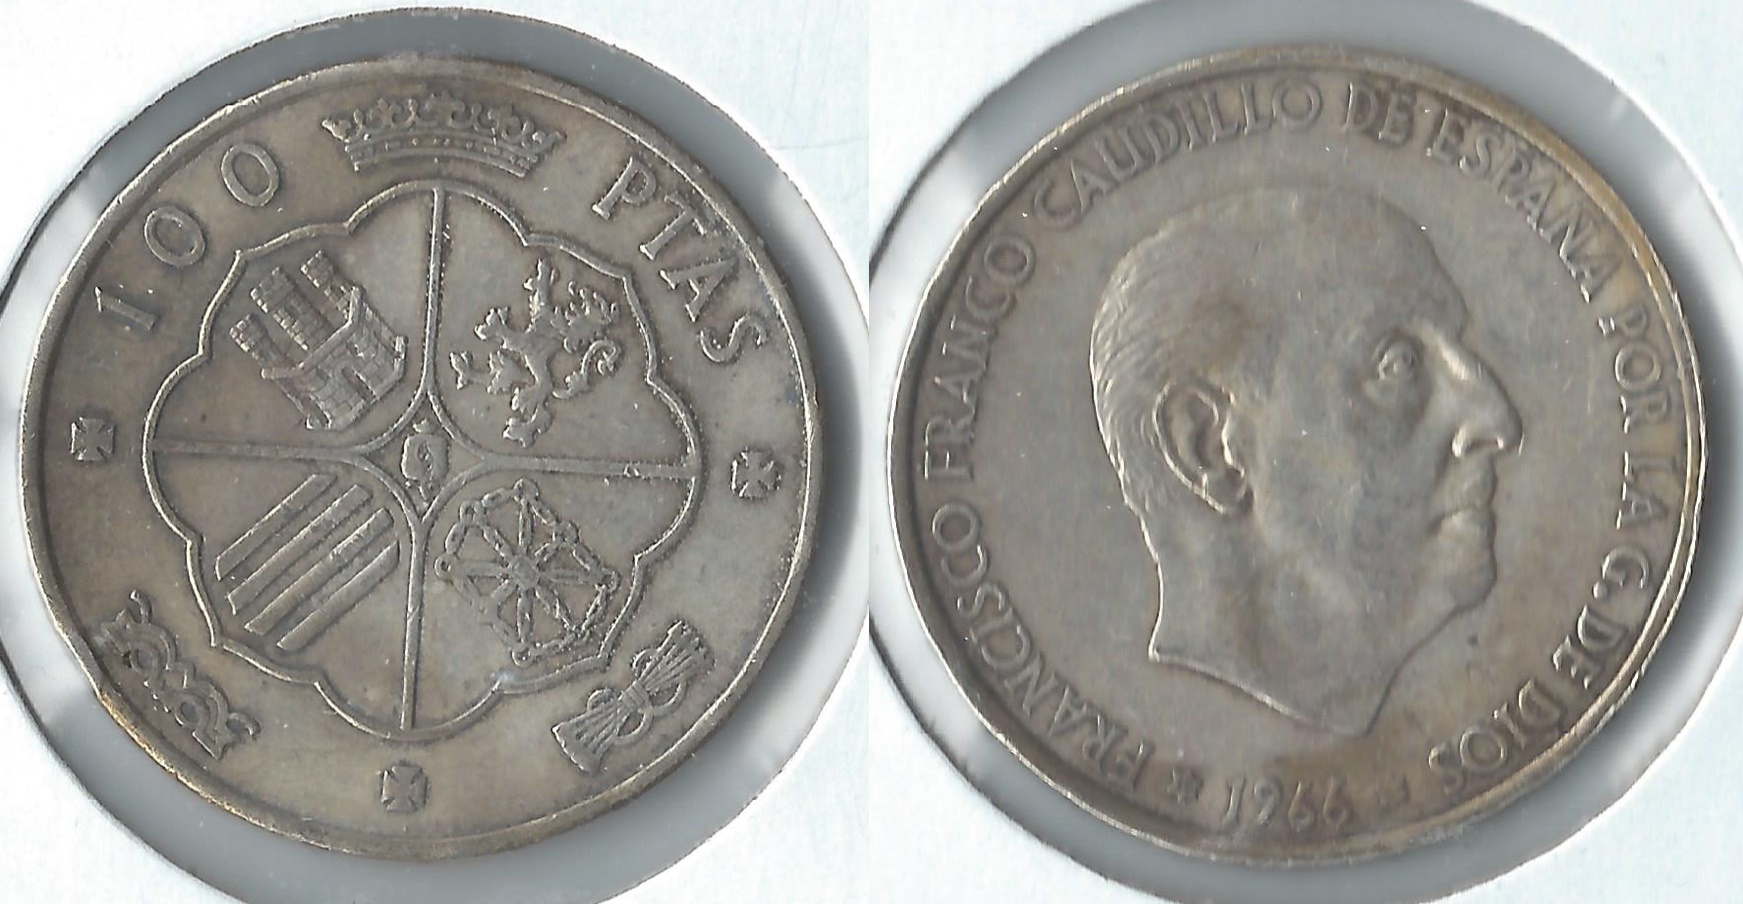 1966 spain 100 pesetas.jpg